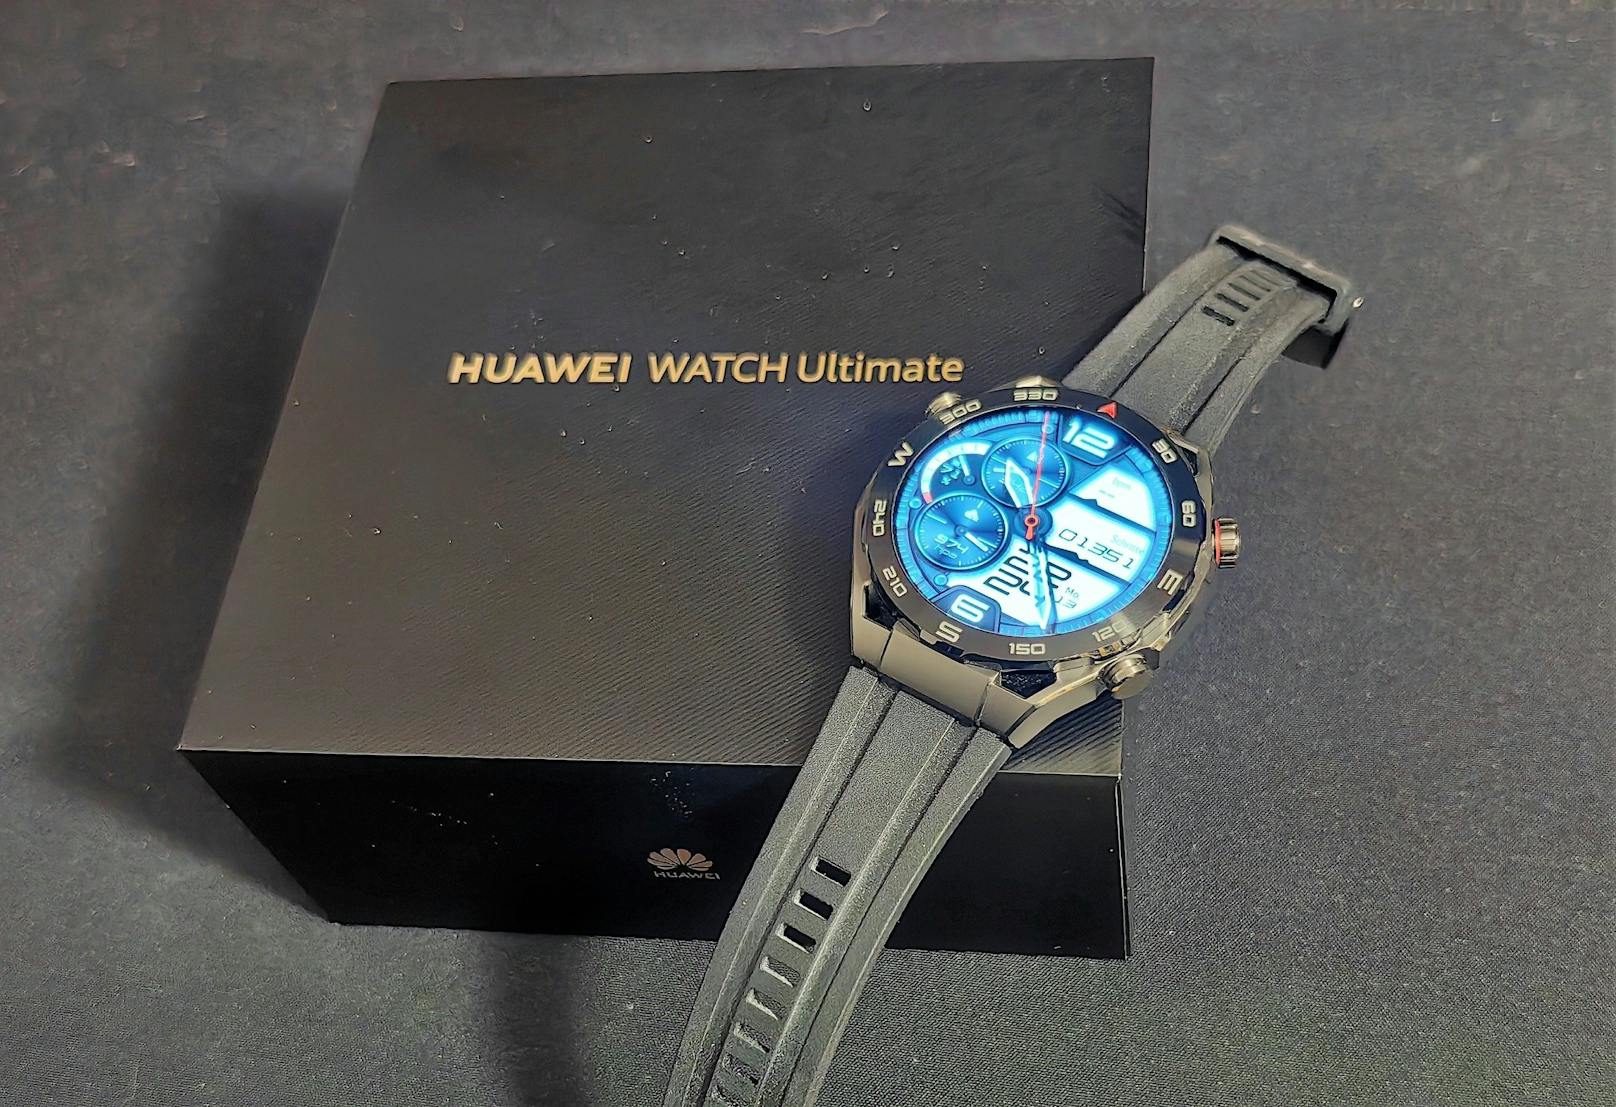 ... Watch Ultimate unterscheidet sich gleich in mehrfacher Hinsicht von den bisherigen Smartwatch-Modellen von Huawei. Mit Abmessungen von 48,5 x 48,5 x 13 Millimetern ...